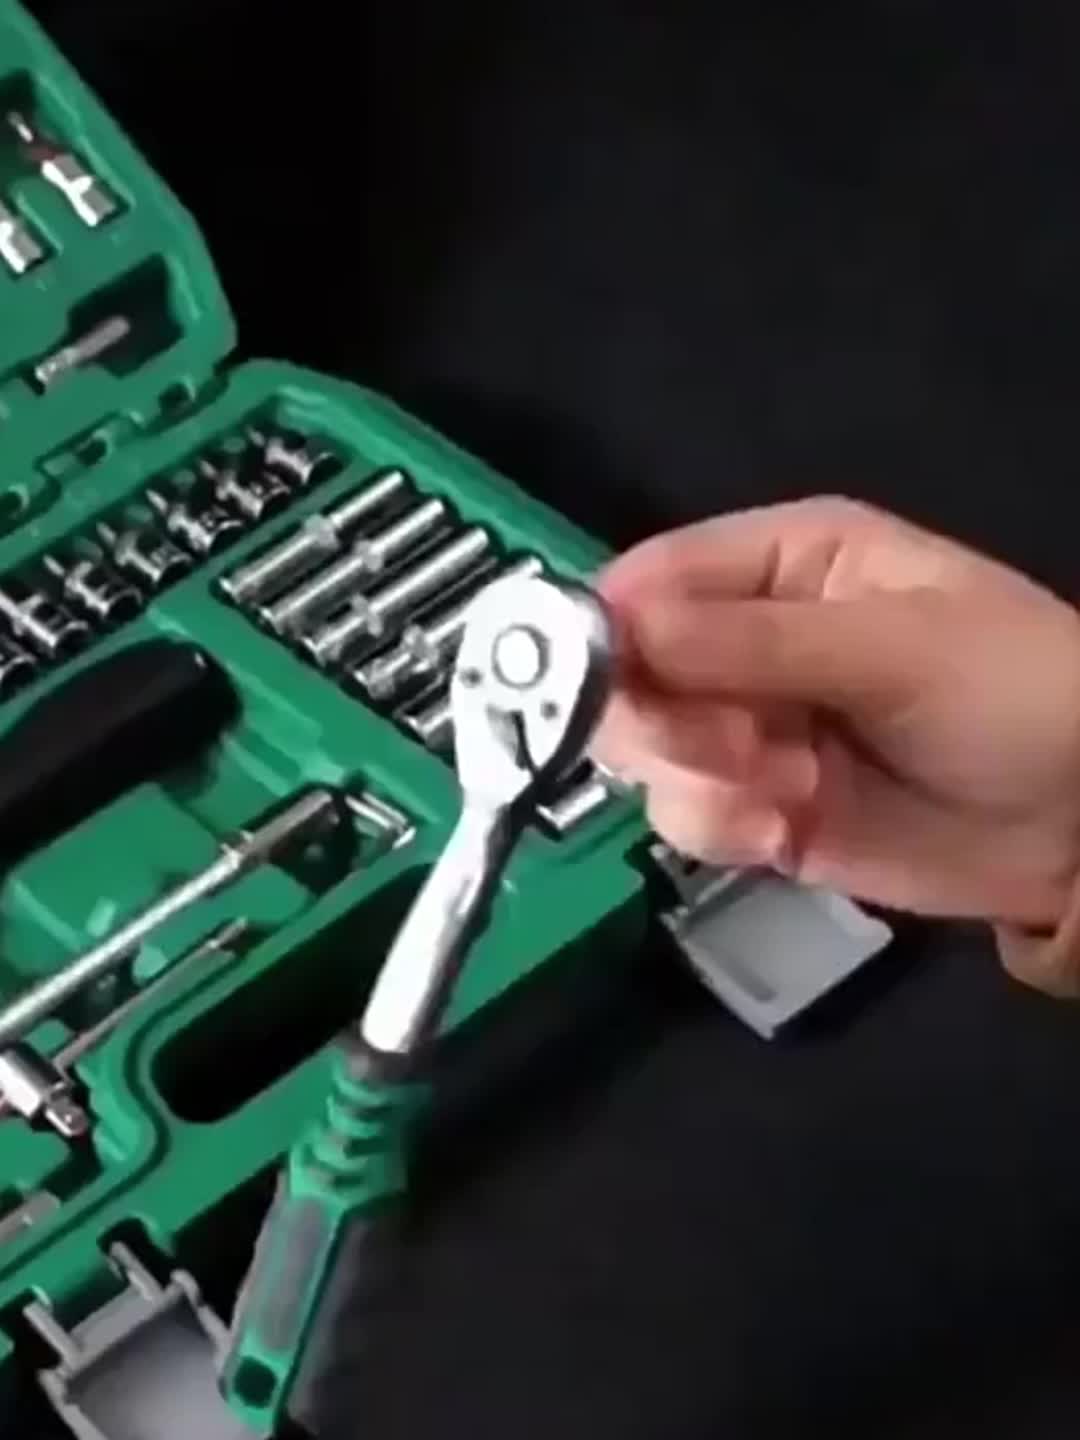 Car Repair Tool Kit Ratchet Torque Wrench Spanner - Temu